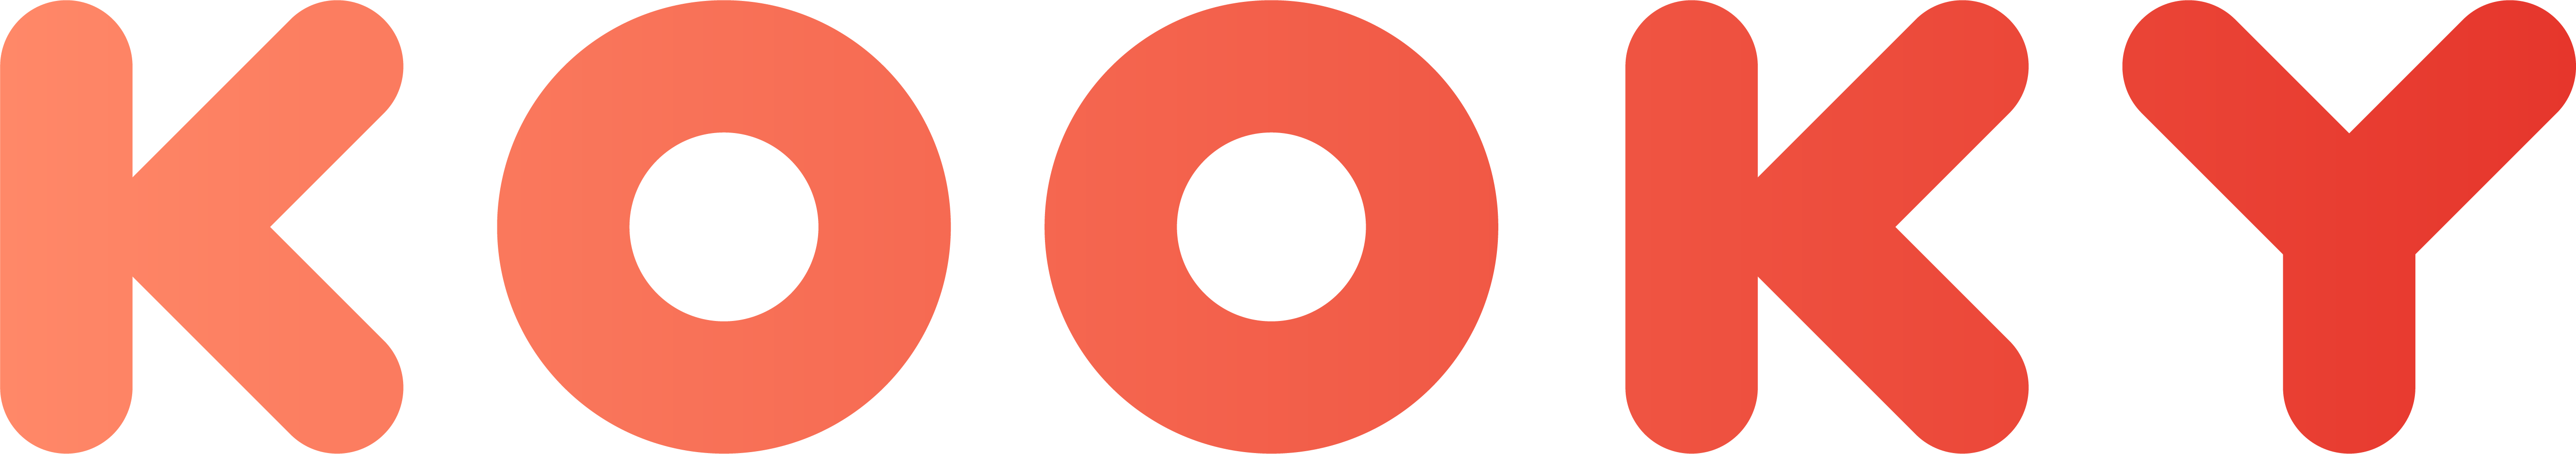 kooky-logo